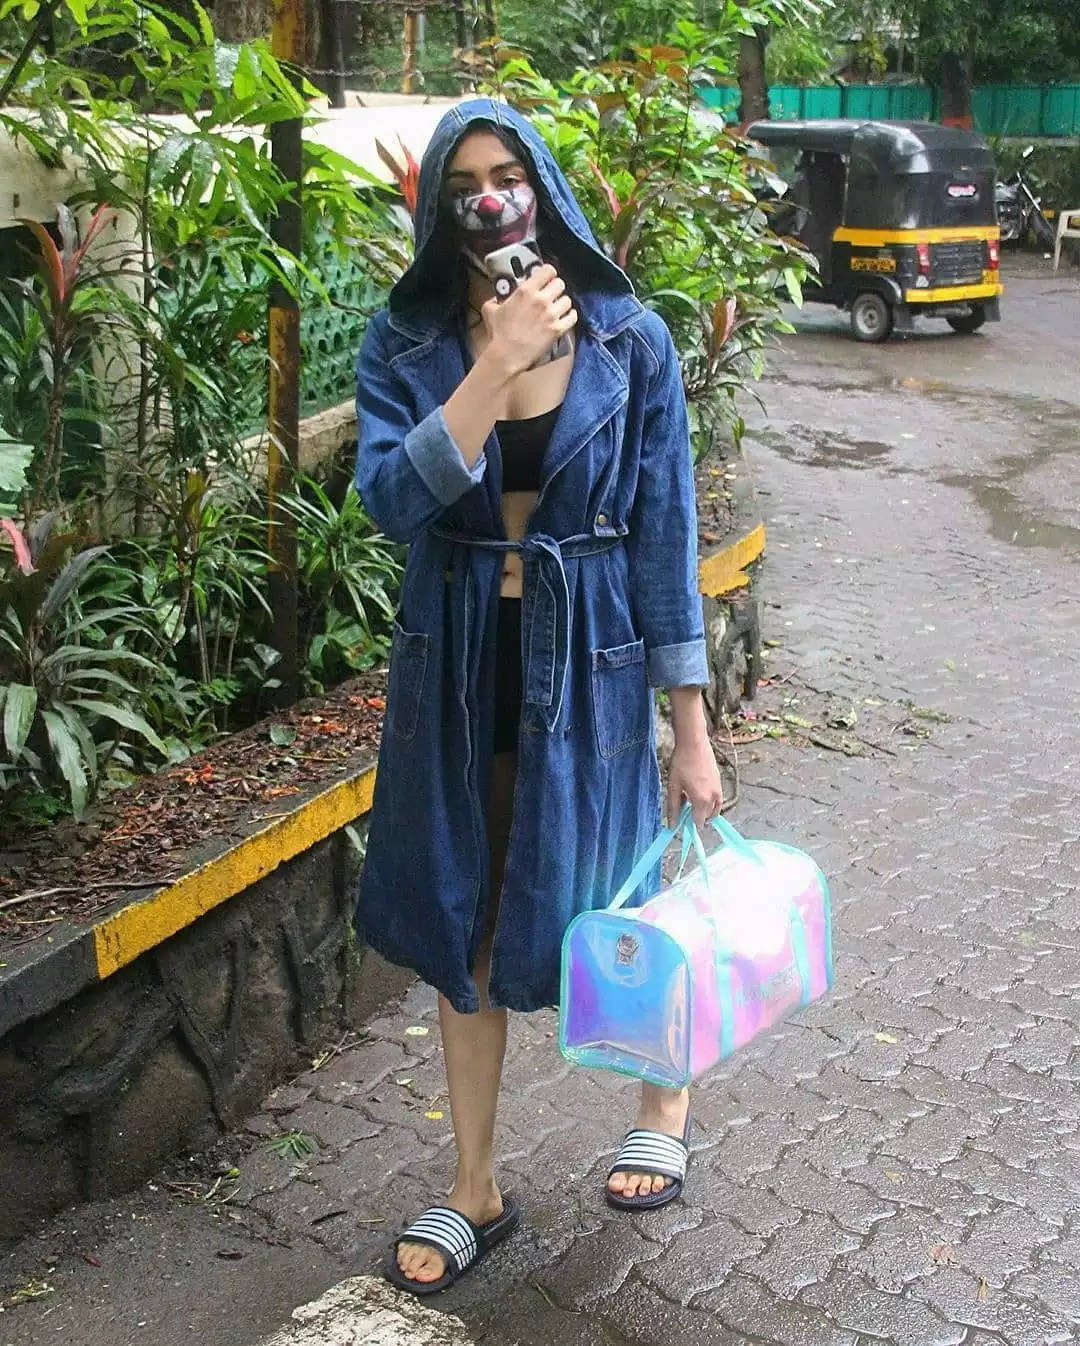 जैकेट पहने हुए मुंबई की सड़क पर दिखी यह अभिनेत्री, पहचानना हुआ मुश्किल